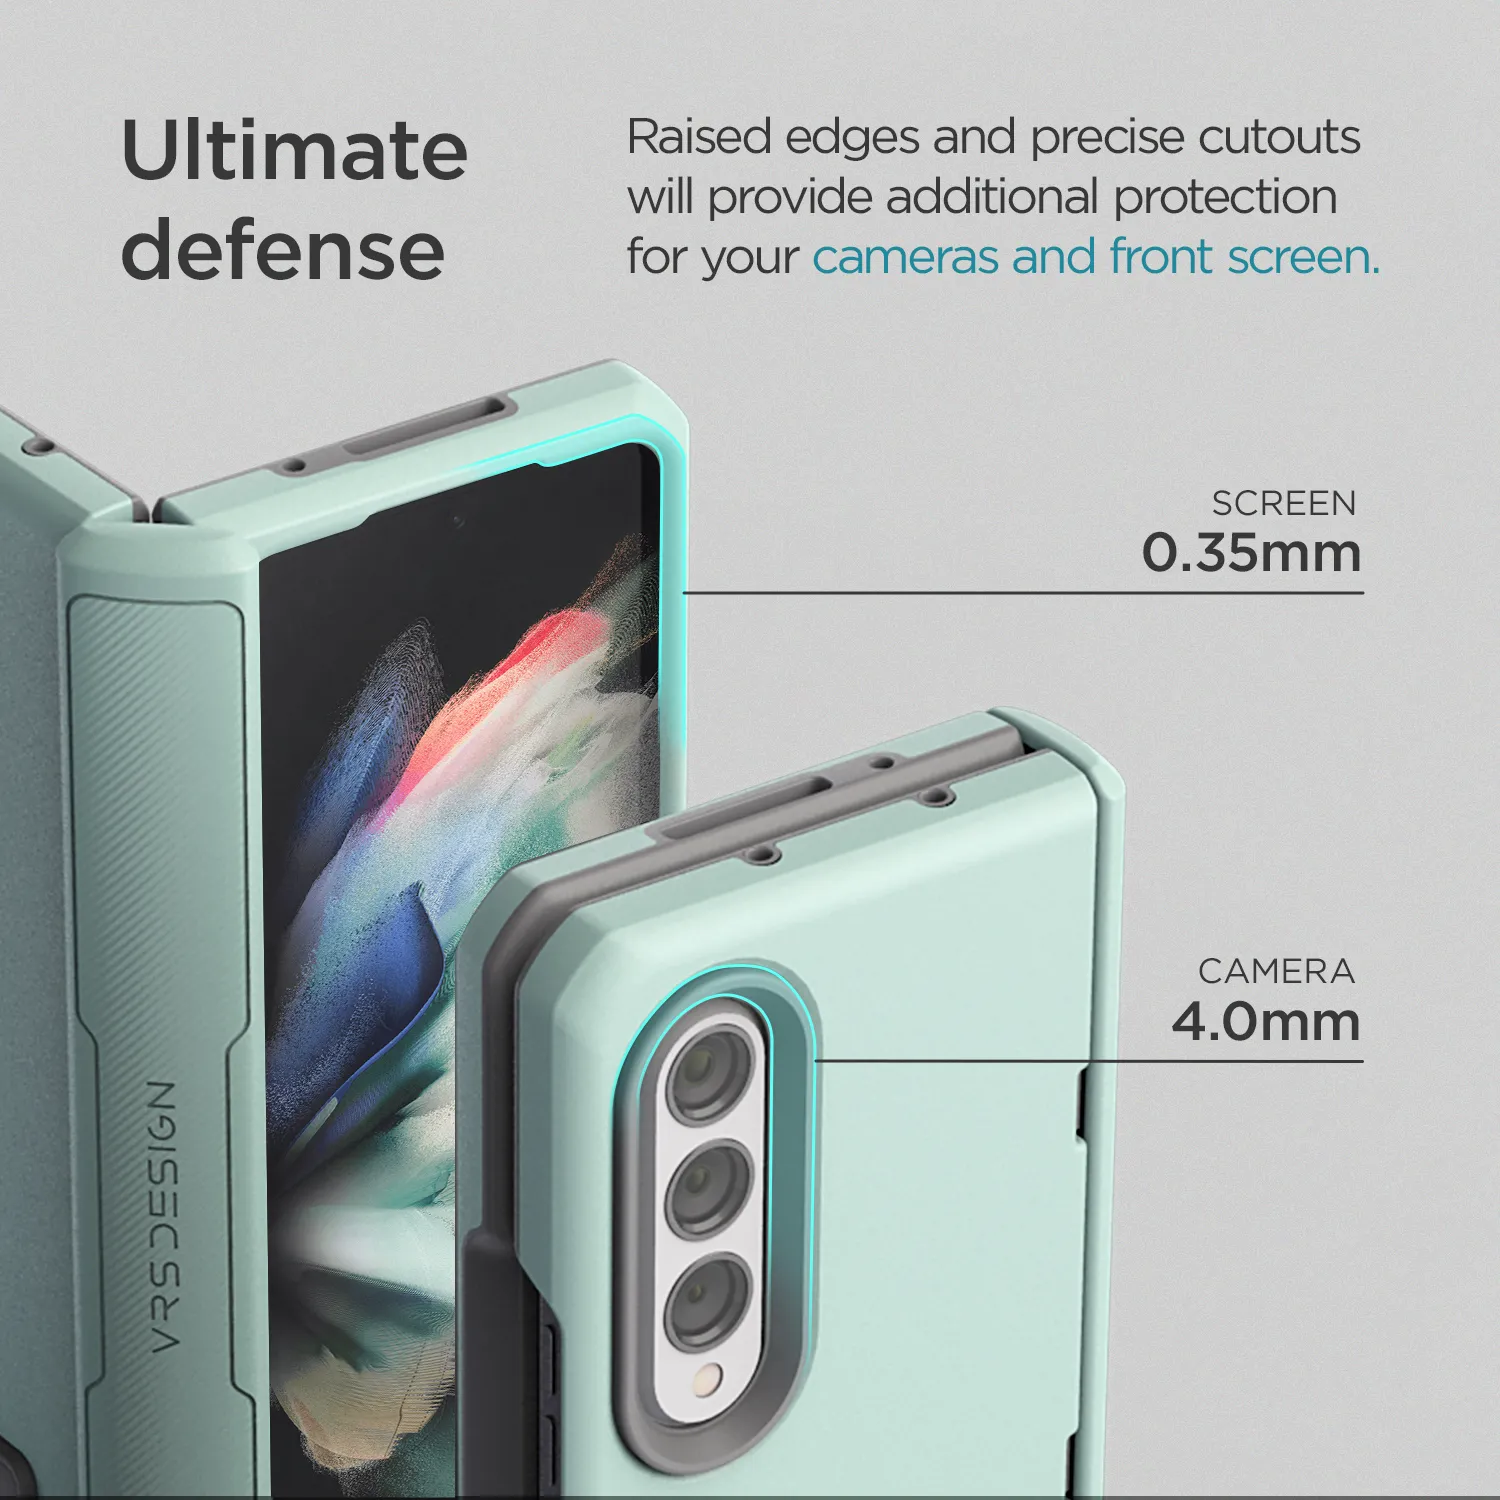 เคส VRS รุ่น Terra Guard Modern - Galaxy Z Fold 3 - สี Marine Green